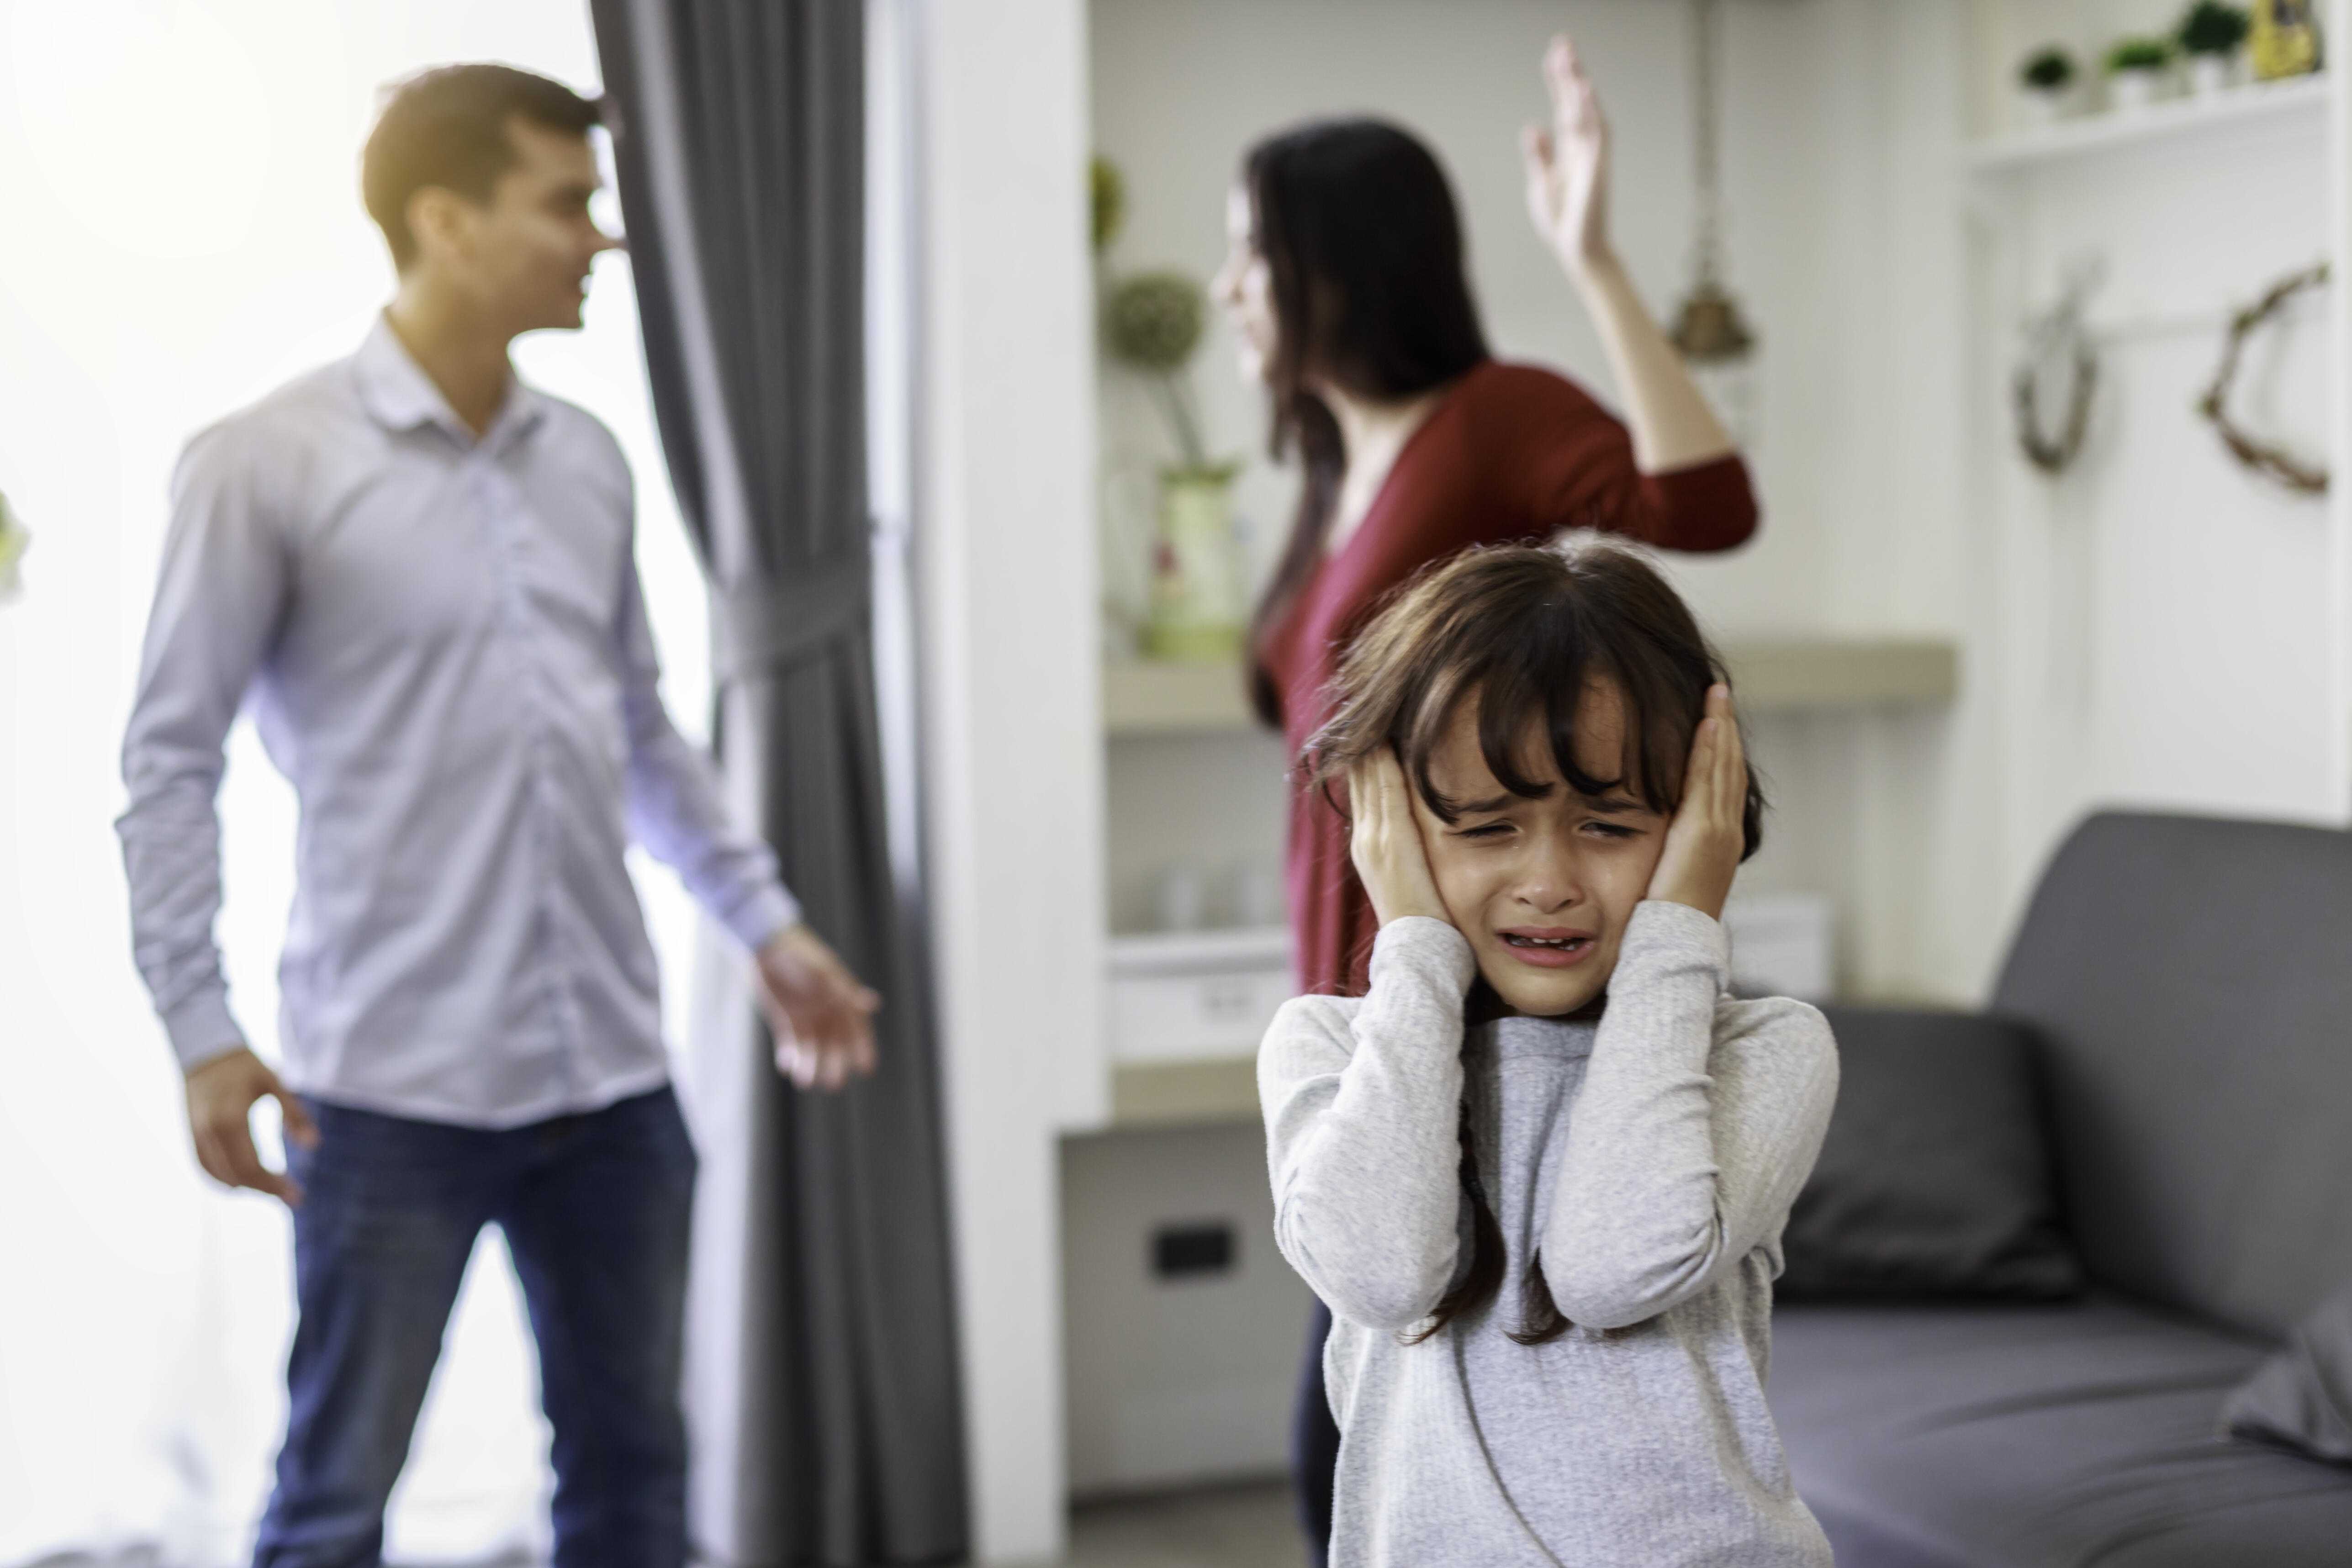 Как меньше ругаться с родителями: 5 секретов общения для подростков